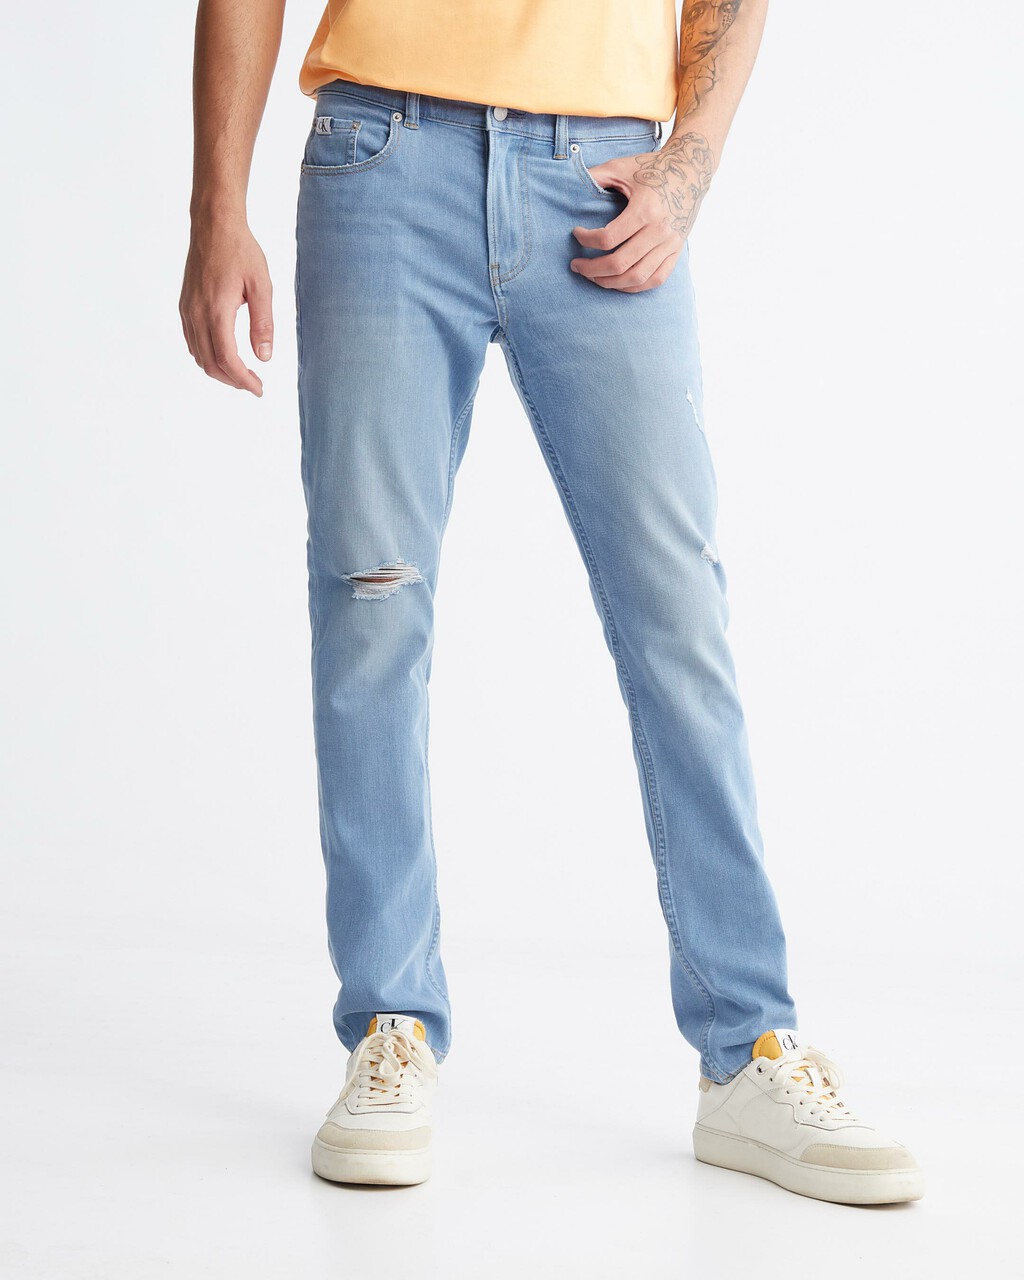 Ultimate Stretch Body Skinny Jeans, LIGHT BLUE DSTR, hi-res